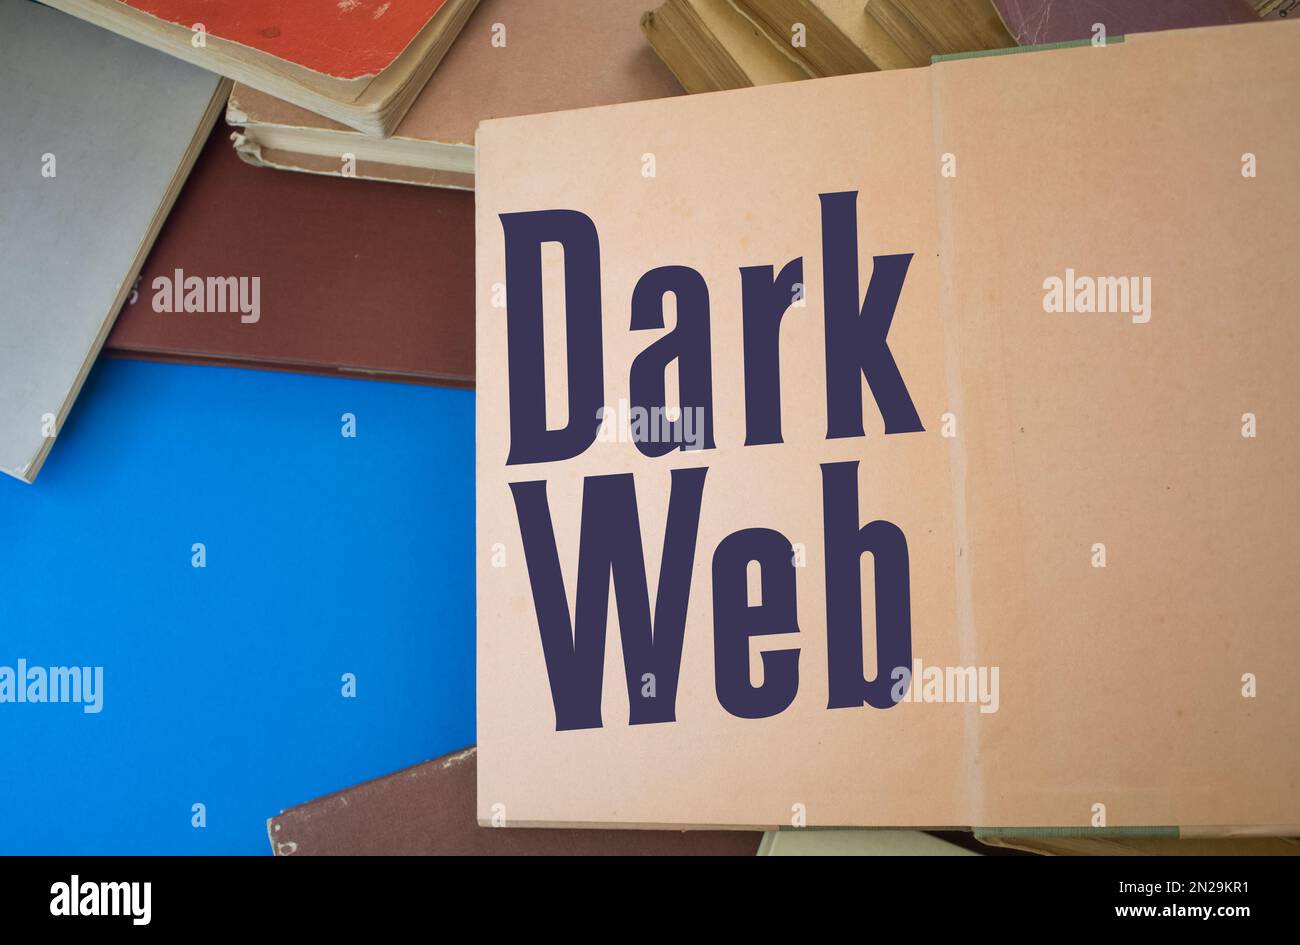 Dunkles Webwort in einem offenen Buch mit alten, natürlichen Mustern und altem Papierdesign. Stockfoto